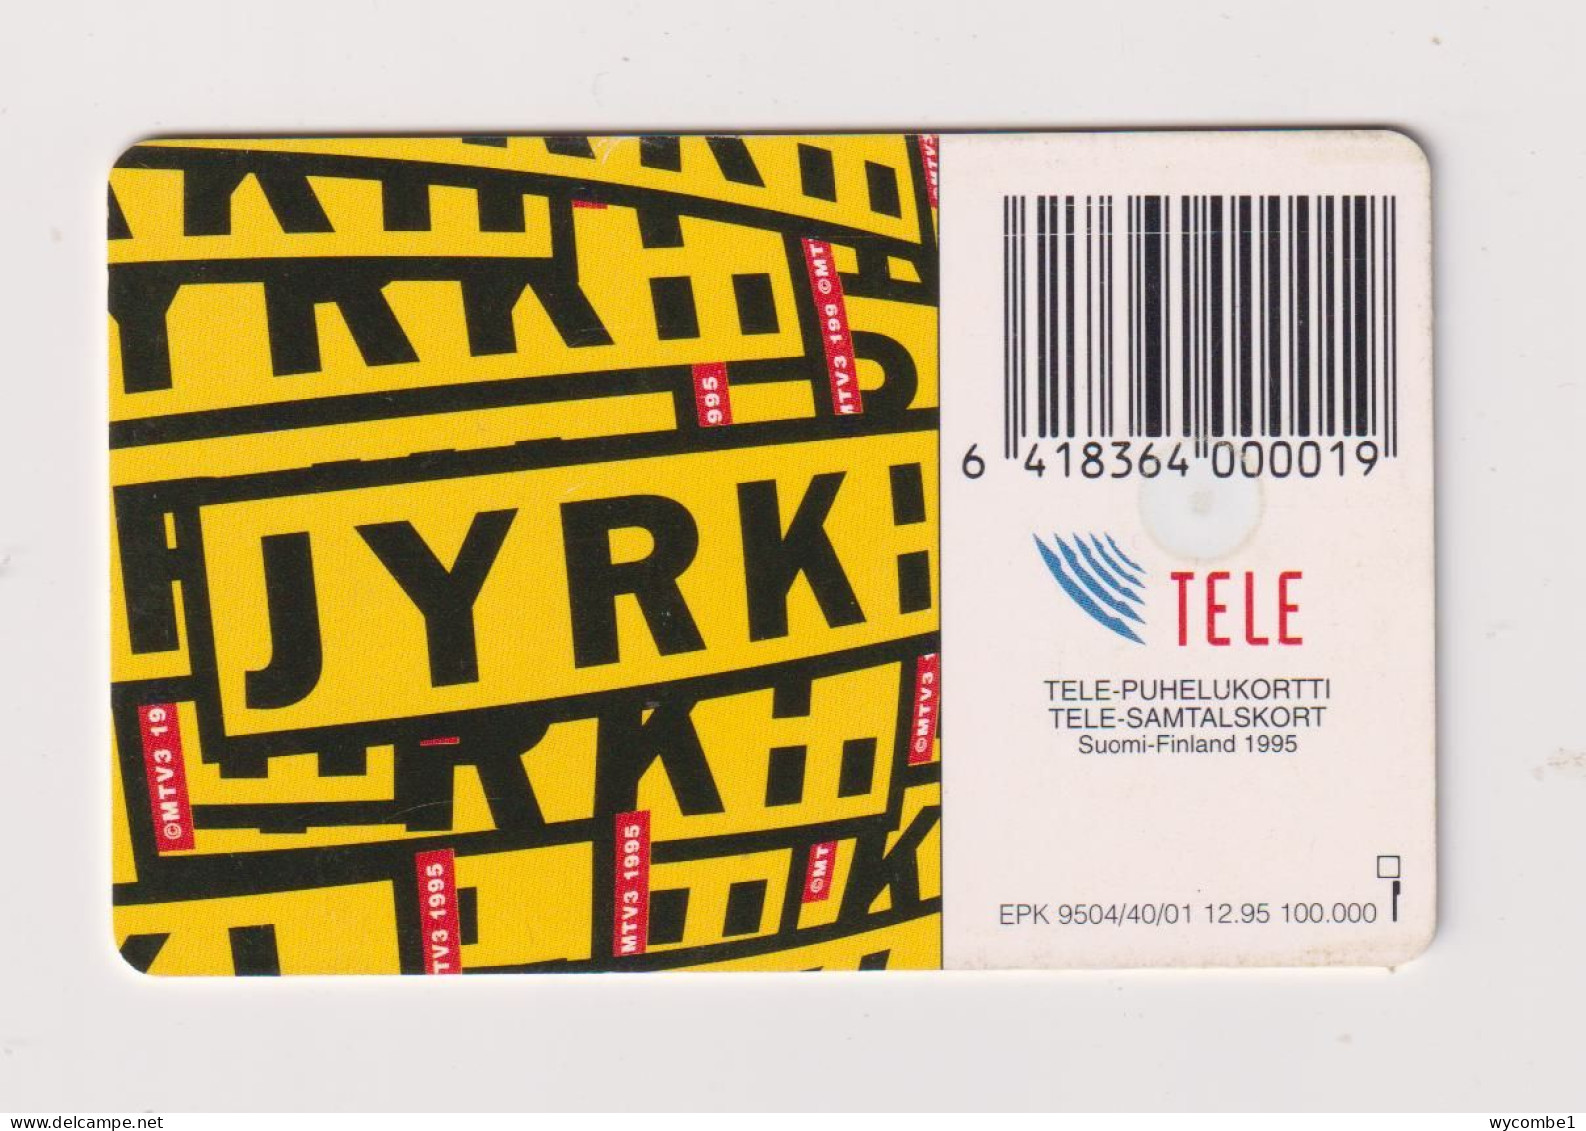 FINLAND - Jyrk Chip Phonecard - Finland